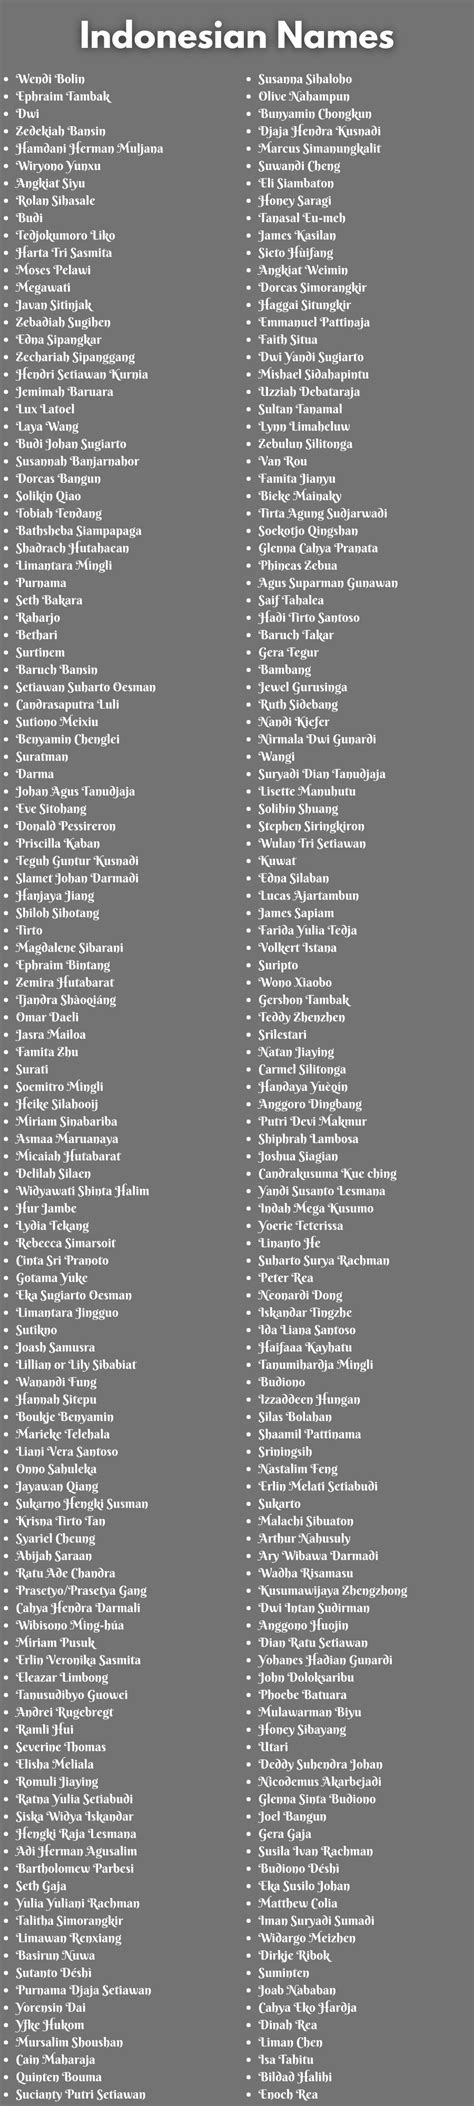 400 Mejores Nombres Indonesios Que Puedes Usar Nombres Db